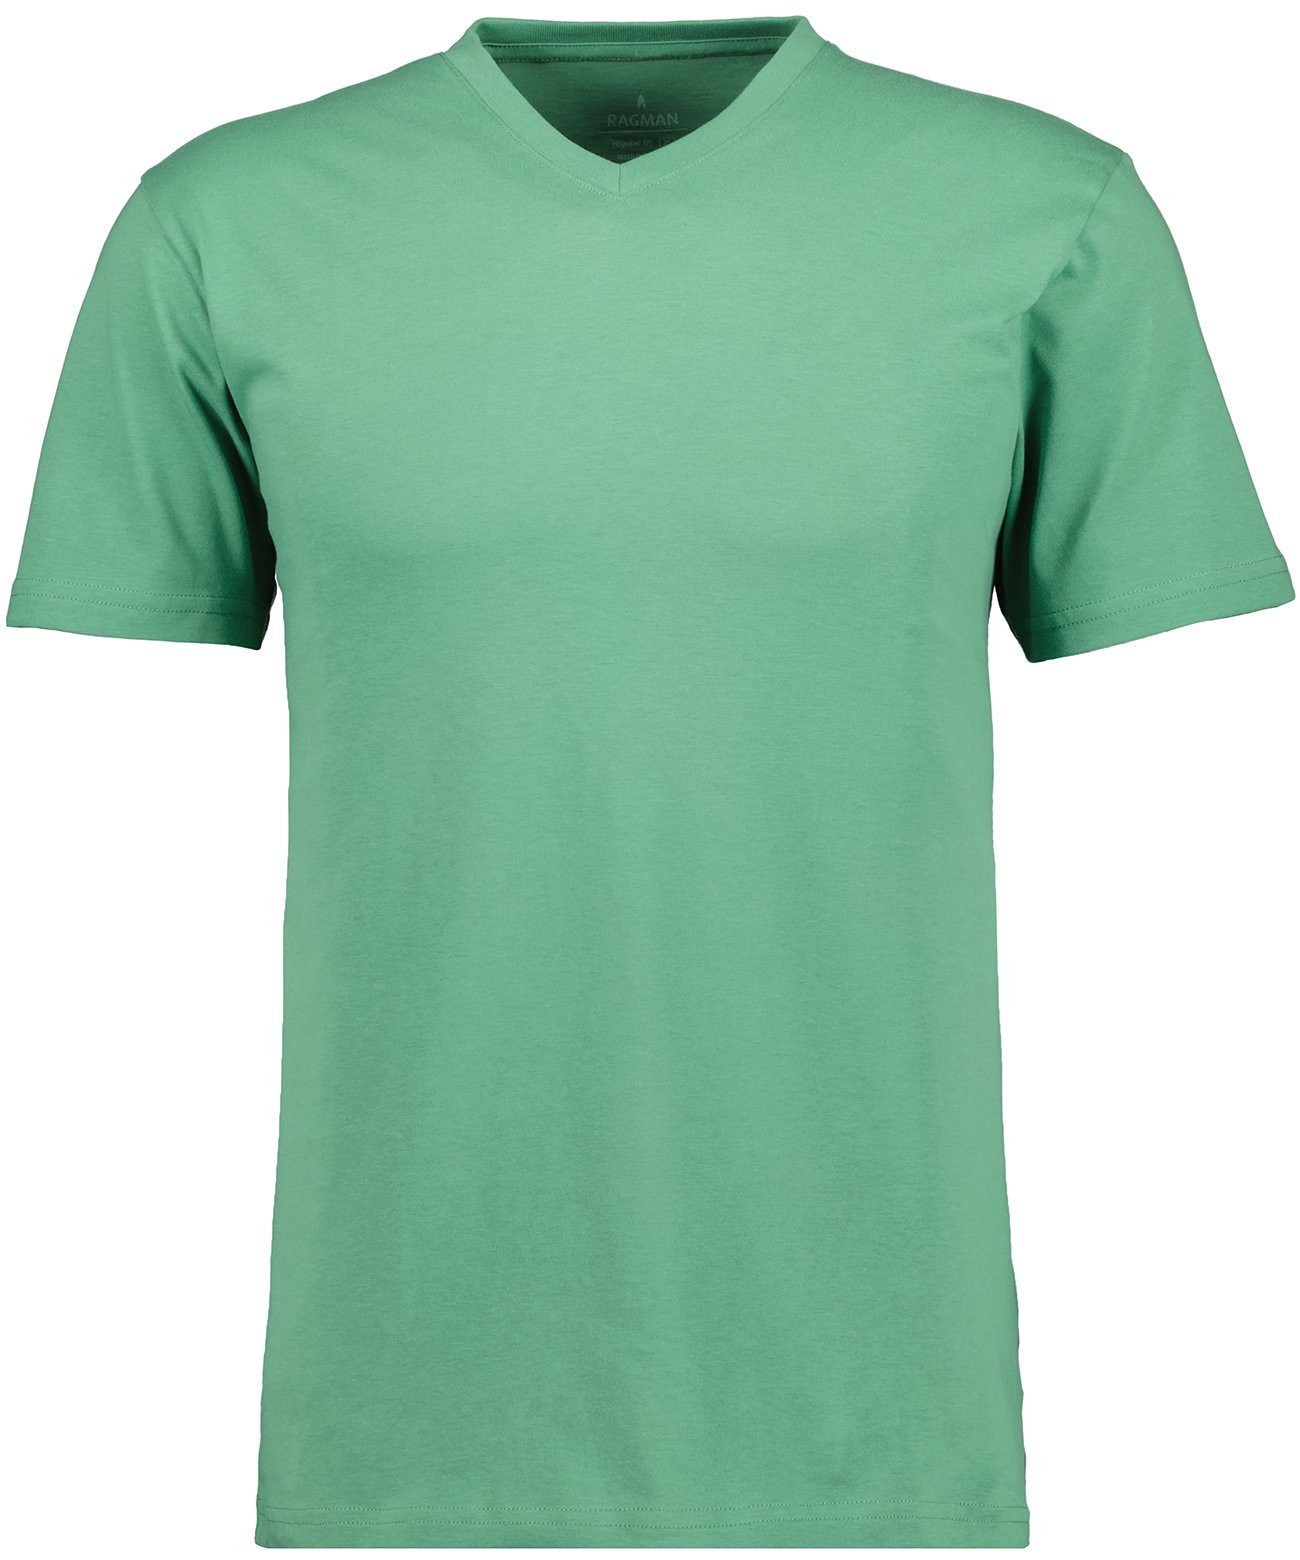 Grasgrün-370 RAGMAN T-Shirt